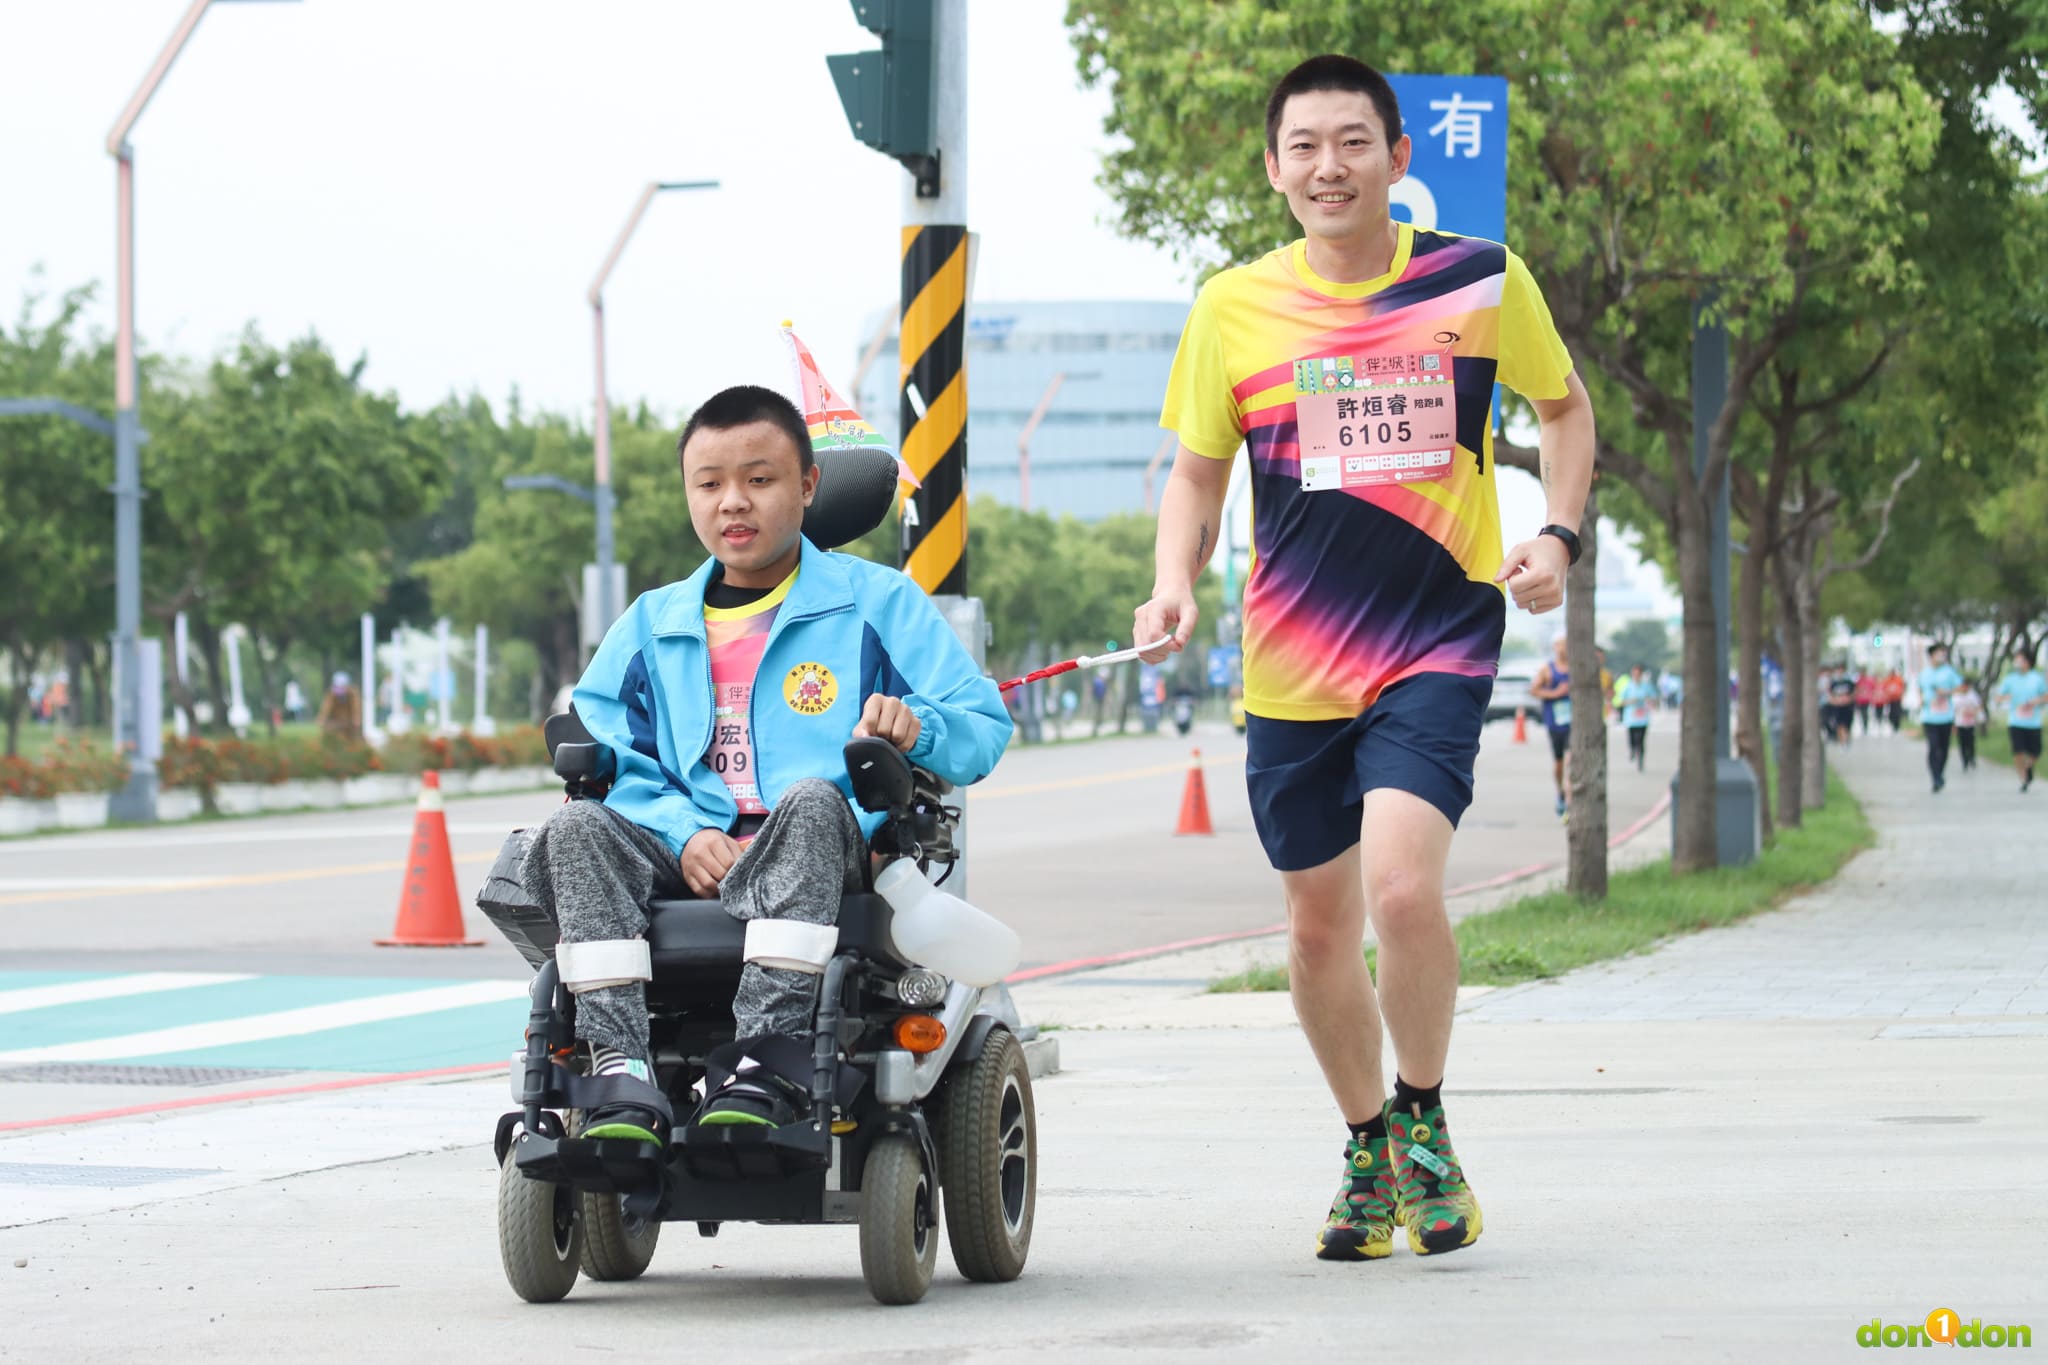 肢體障礙學生郭宏佑的陪跑員(左)，與屏東特殊教育學校老師許烜睿(右)